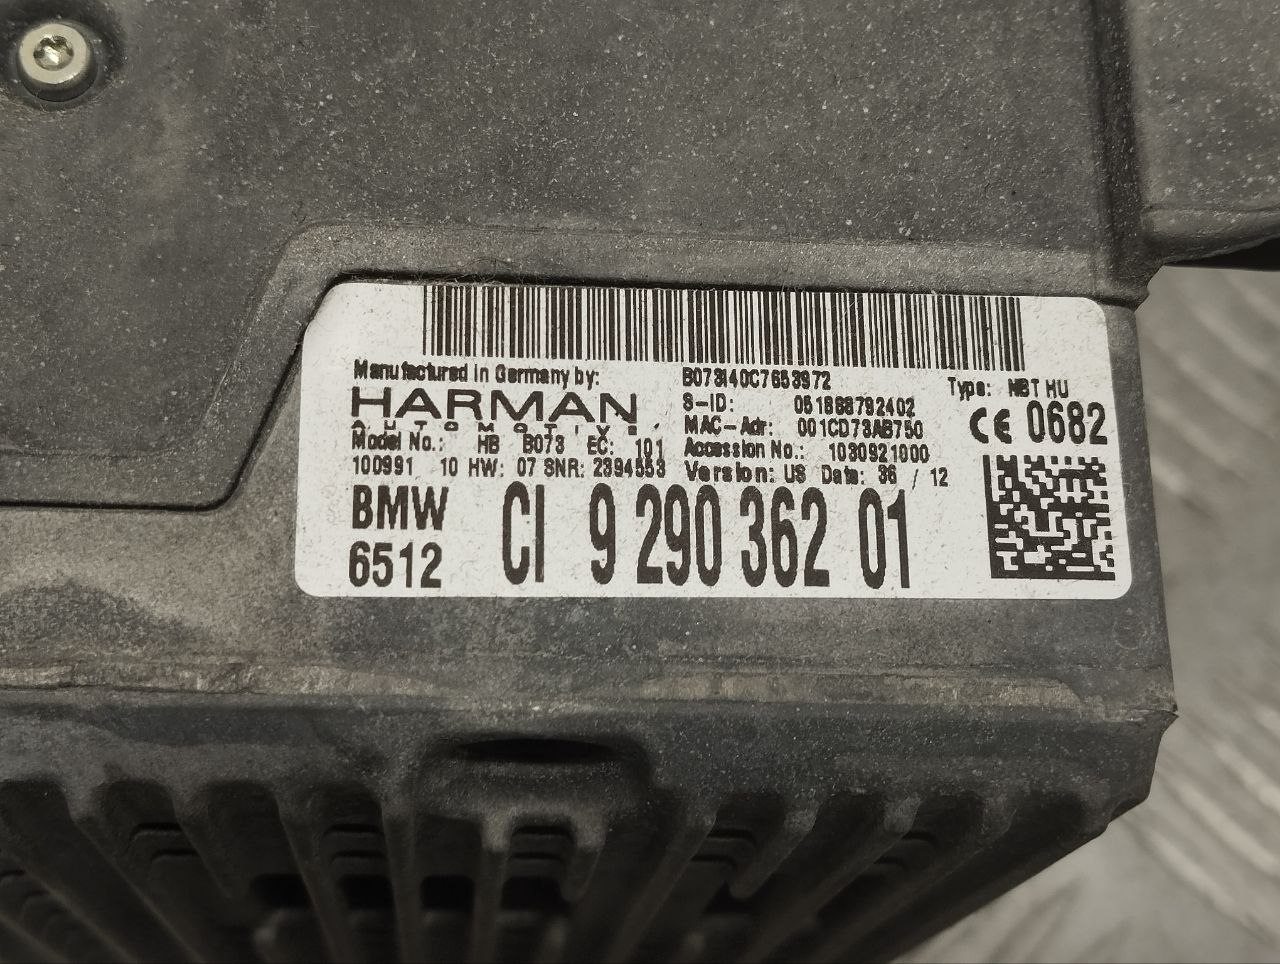 BMW 7 Series F01/F02 (2008-2015) Navigation Control Unit 9290362, NBTHU 23821131